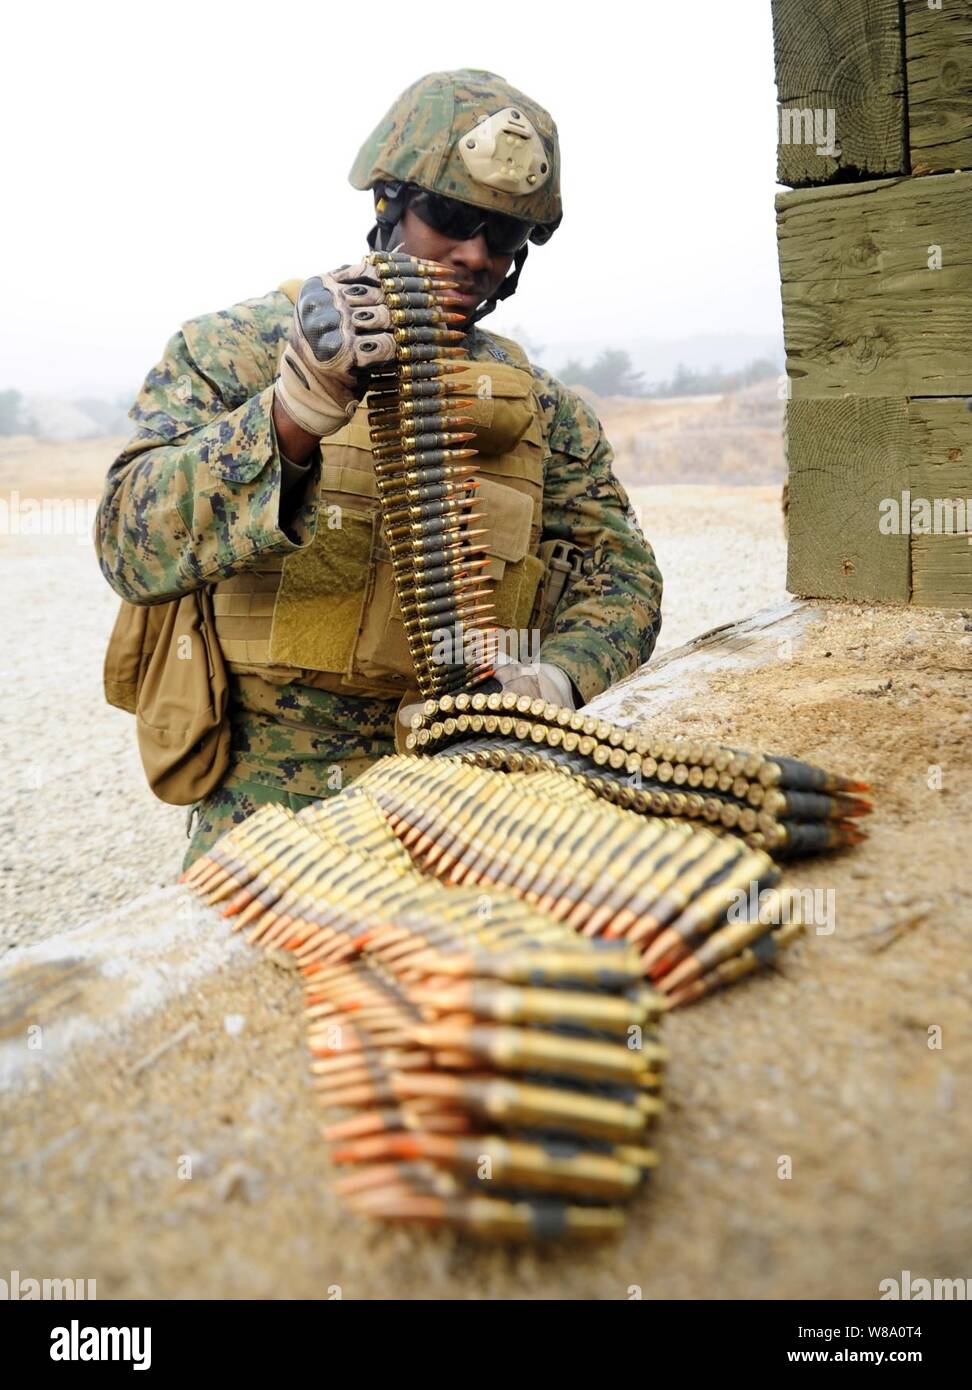 Stati Uniti Marine Corps Sgt. Wendall Claxton, assegnato alla flotta antiterrorismo Security Team Azienda pacifico, 2° plotone, prepara M240 macchina munizioni pistola prima di condurre un'esercitazione a fuoco a Camp Rodriguez, Corea del Sud, il 8 marzo 2012. Foto Stock